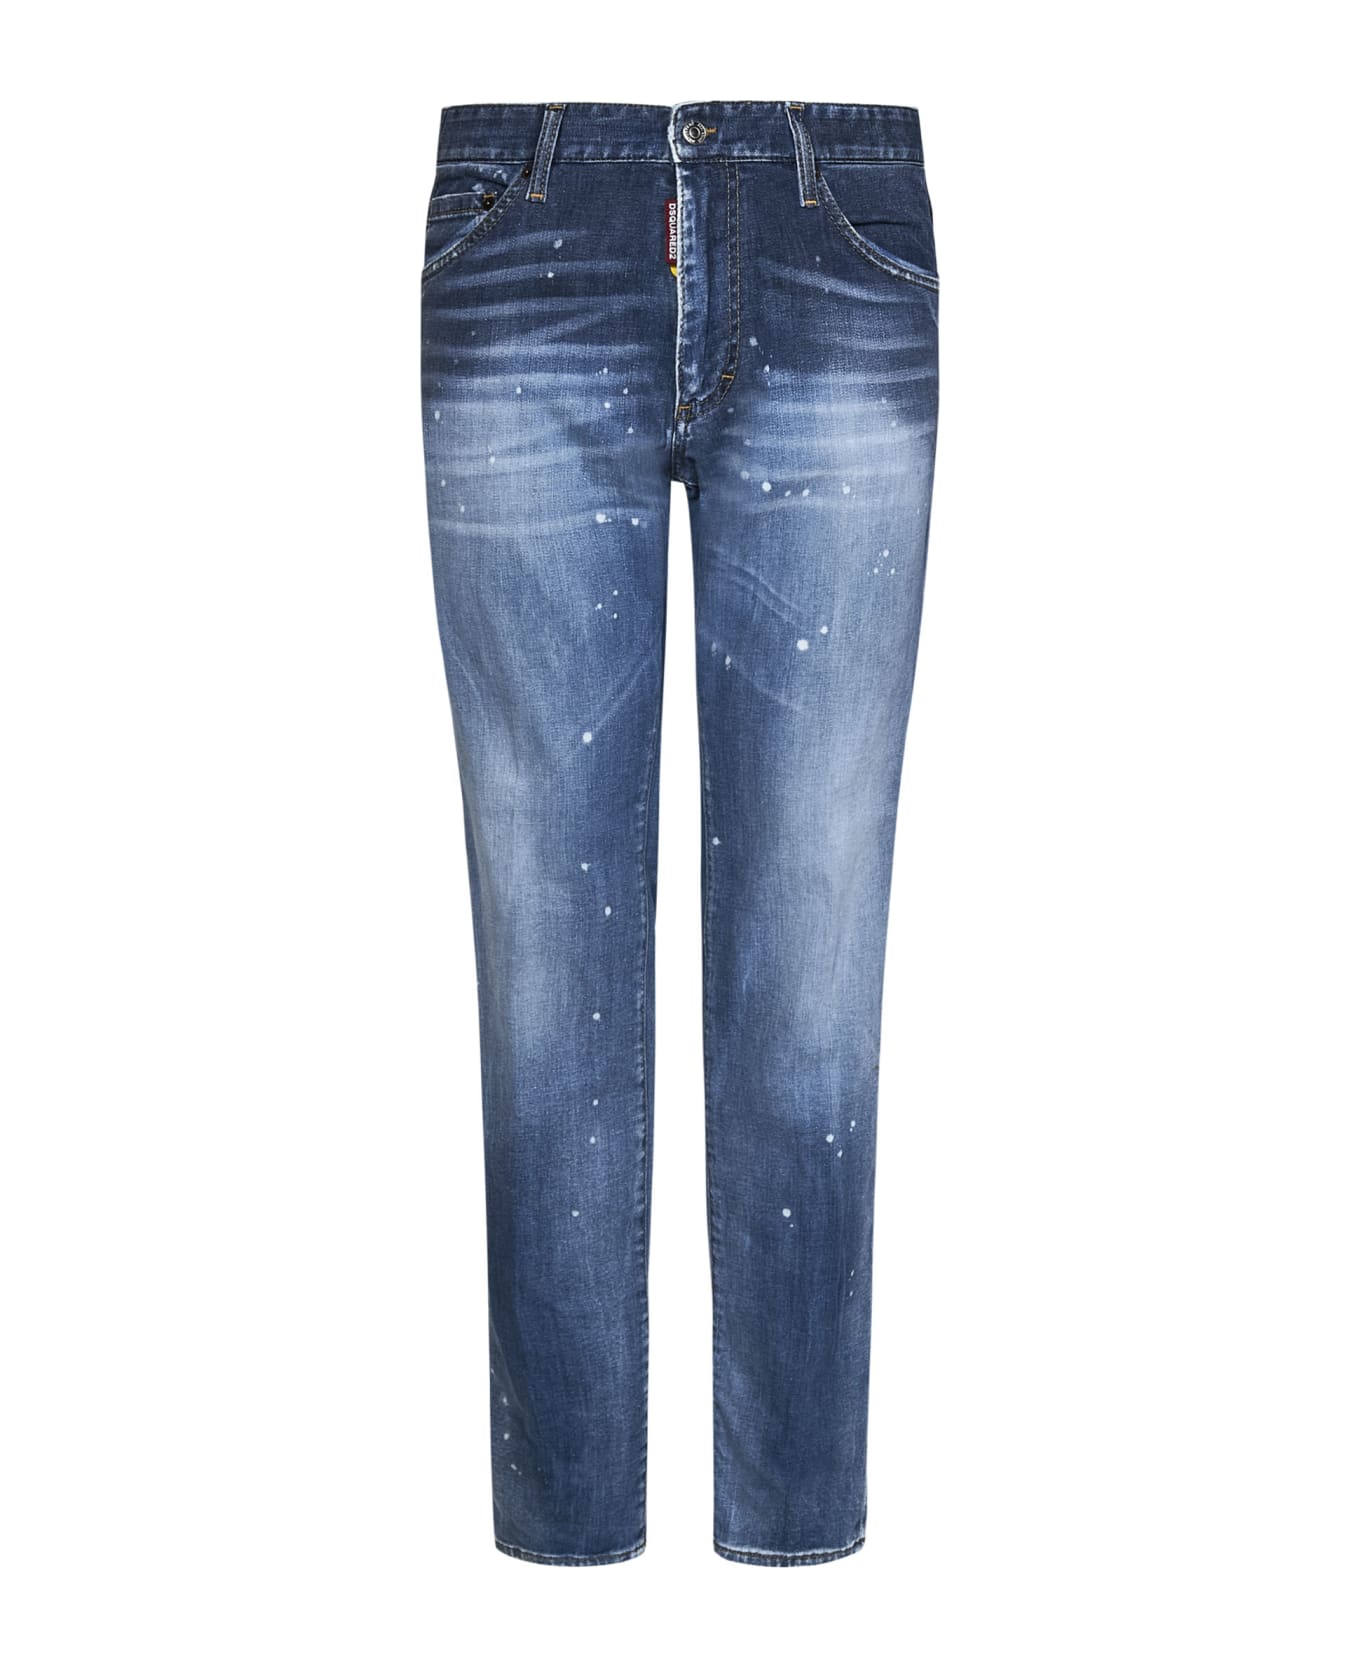 Dsquared2 Paint Splatter Print Straight-leg Jeans - Blue Navy